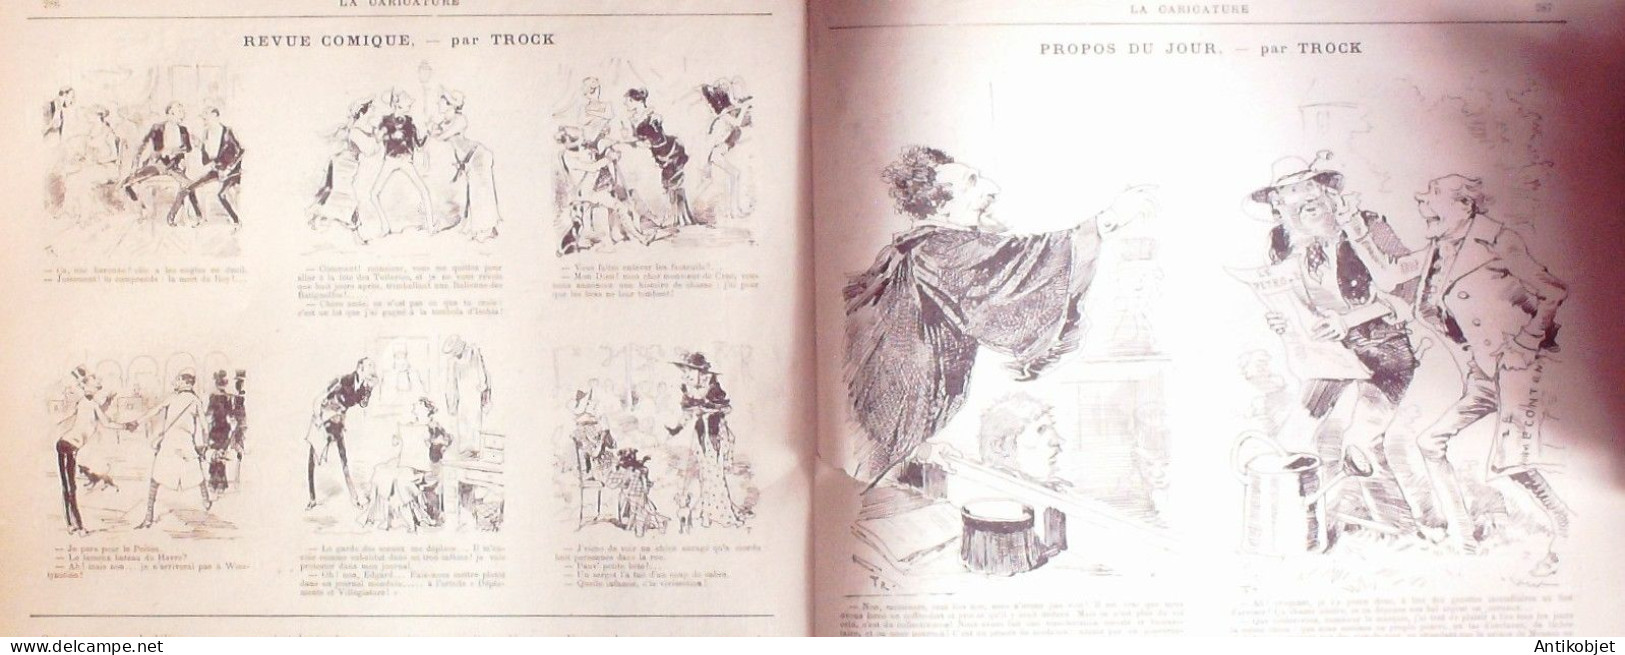 La Caricature 1883 N°193 Potinville-sur-Mer Robida Commerce WogTtrock - Tijdschriften - Voor 1900